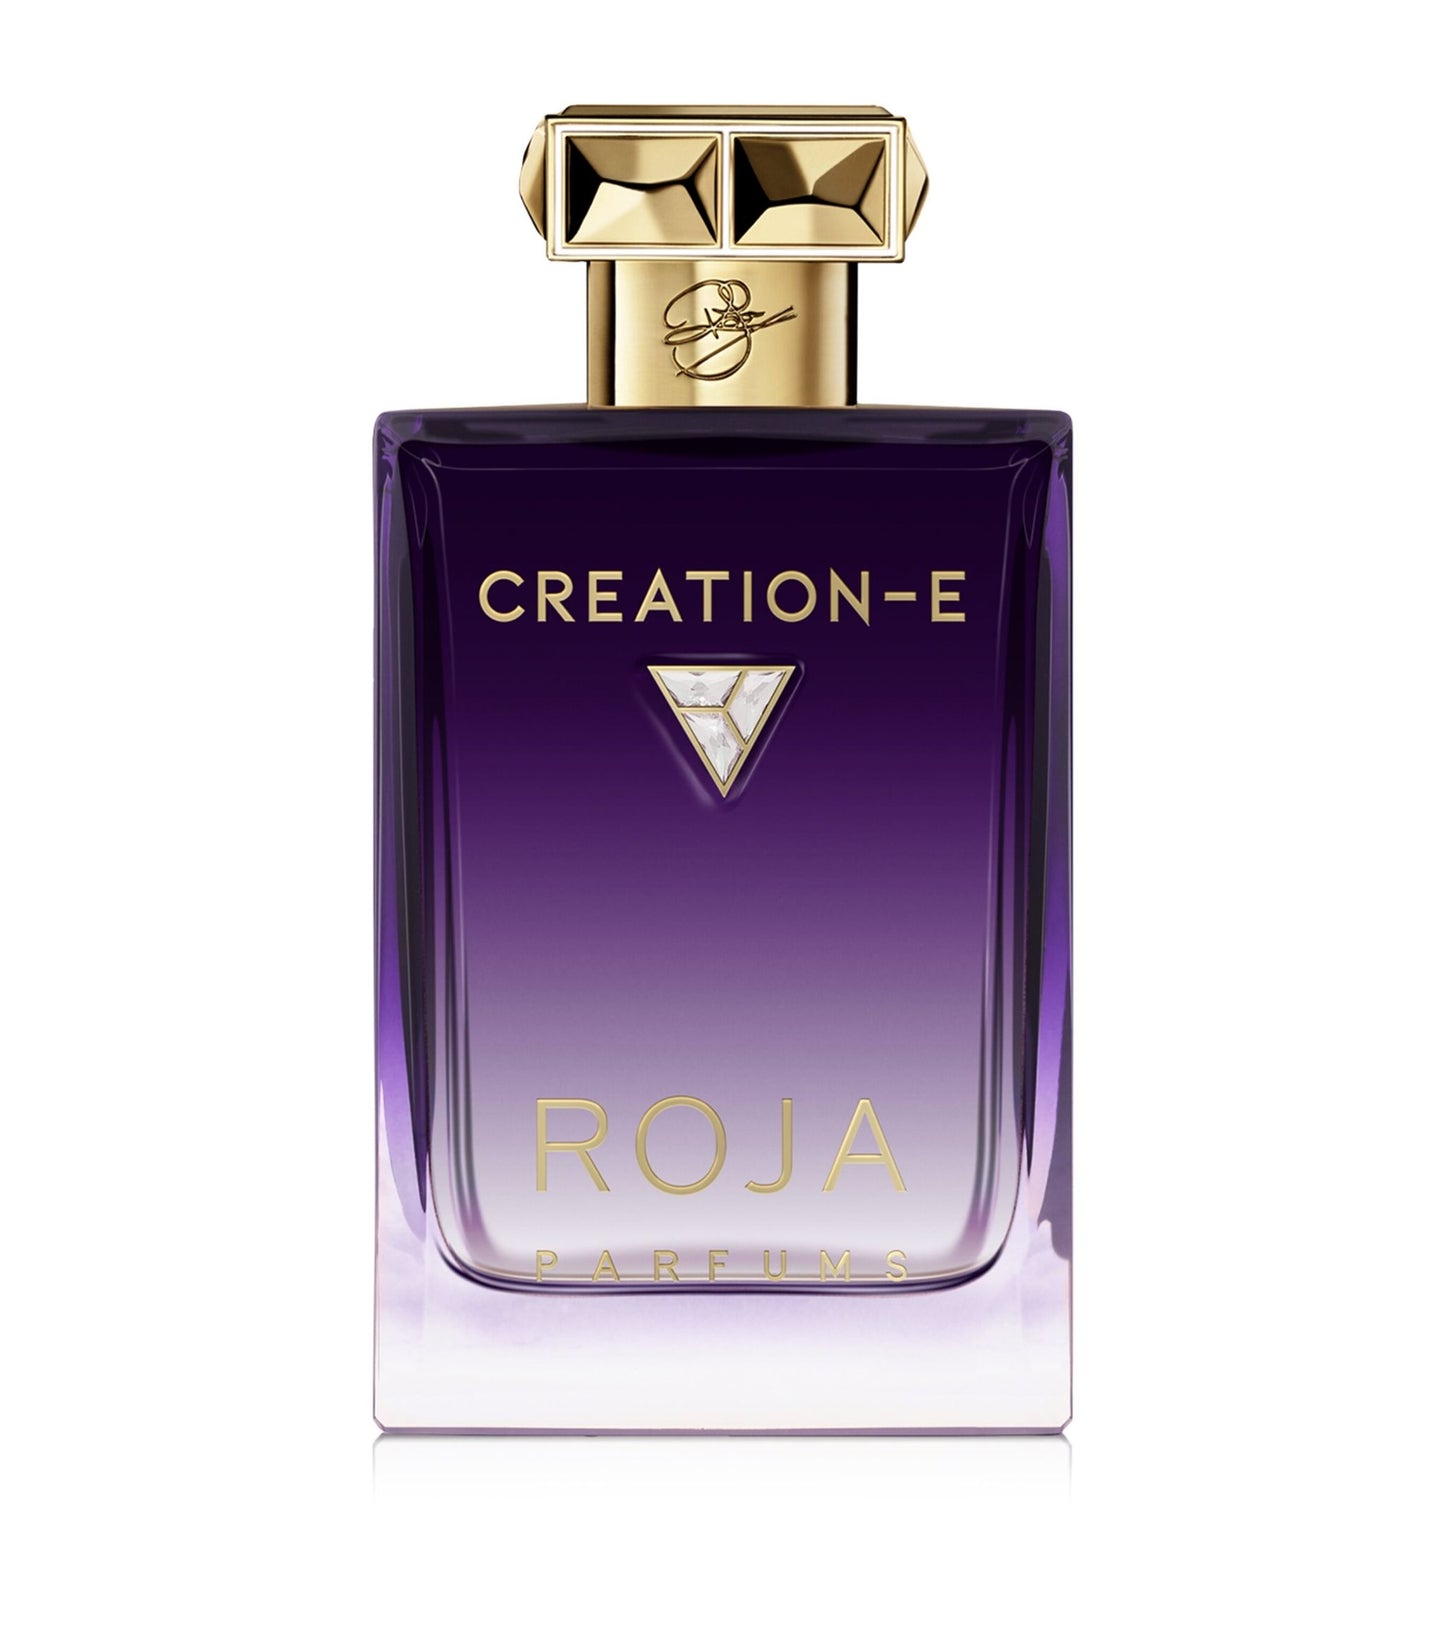 Roja Creation-E Essence de Parfum.